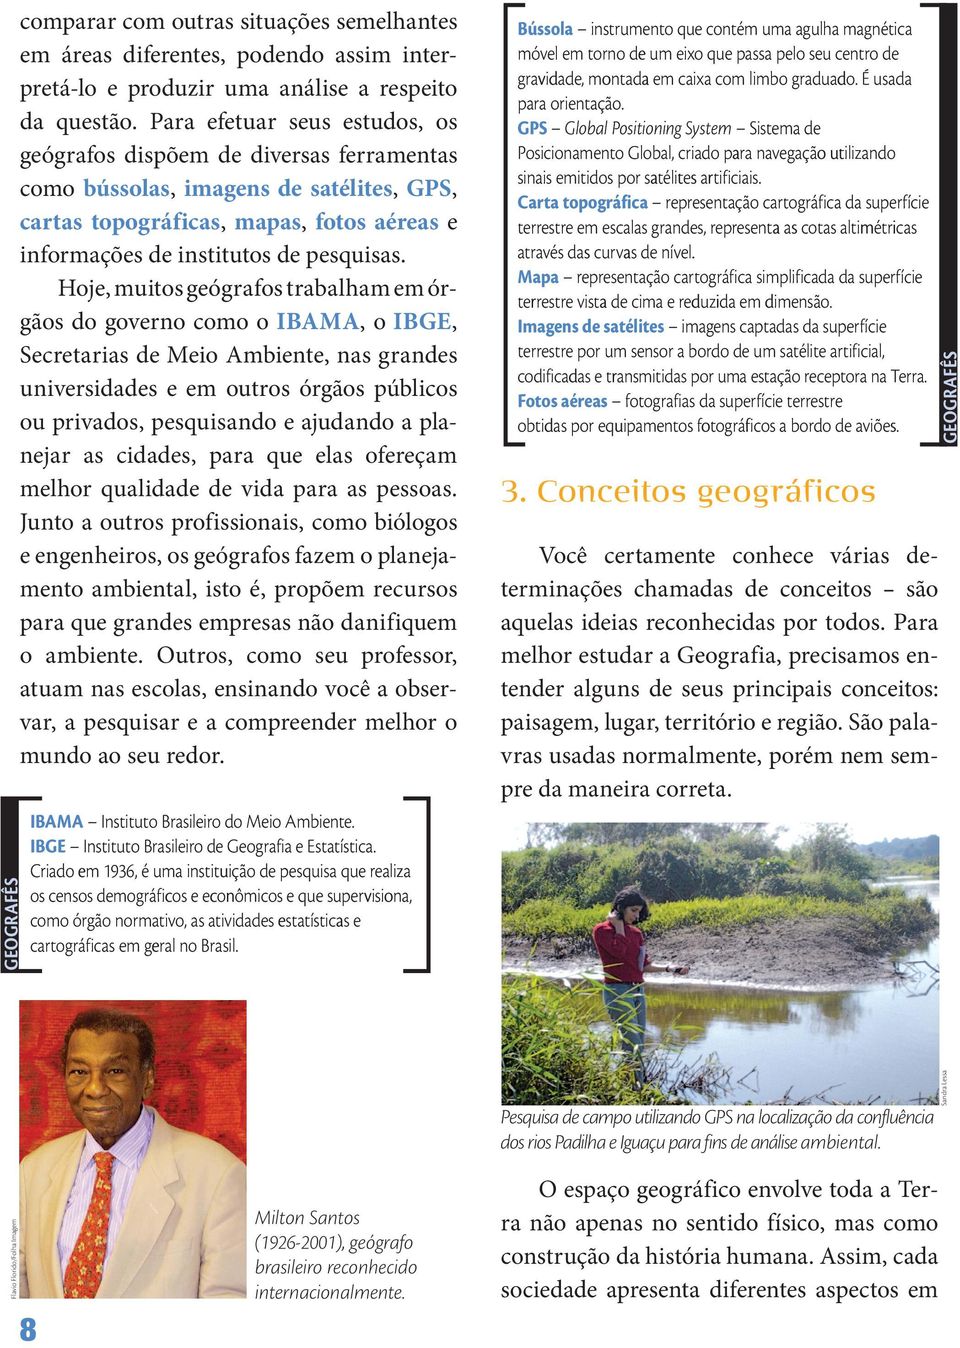 Pesquisa de campo utilizando GPS na localização da confluência dos rios Padilha e Iguaçu para fins de análise ambiental.